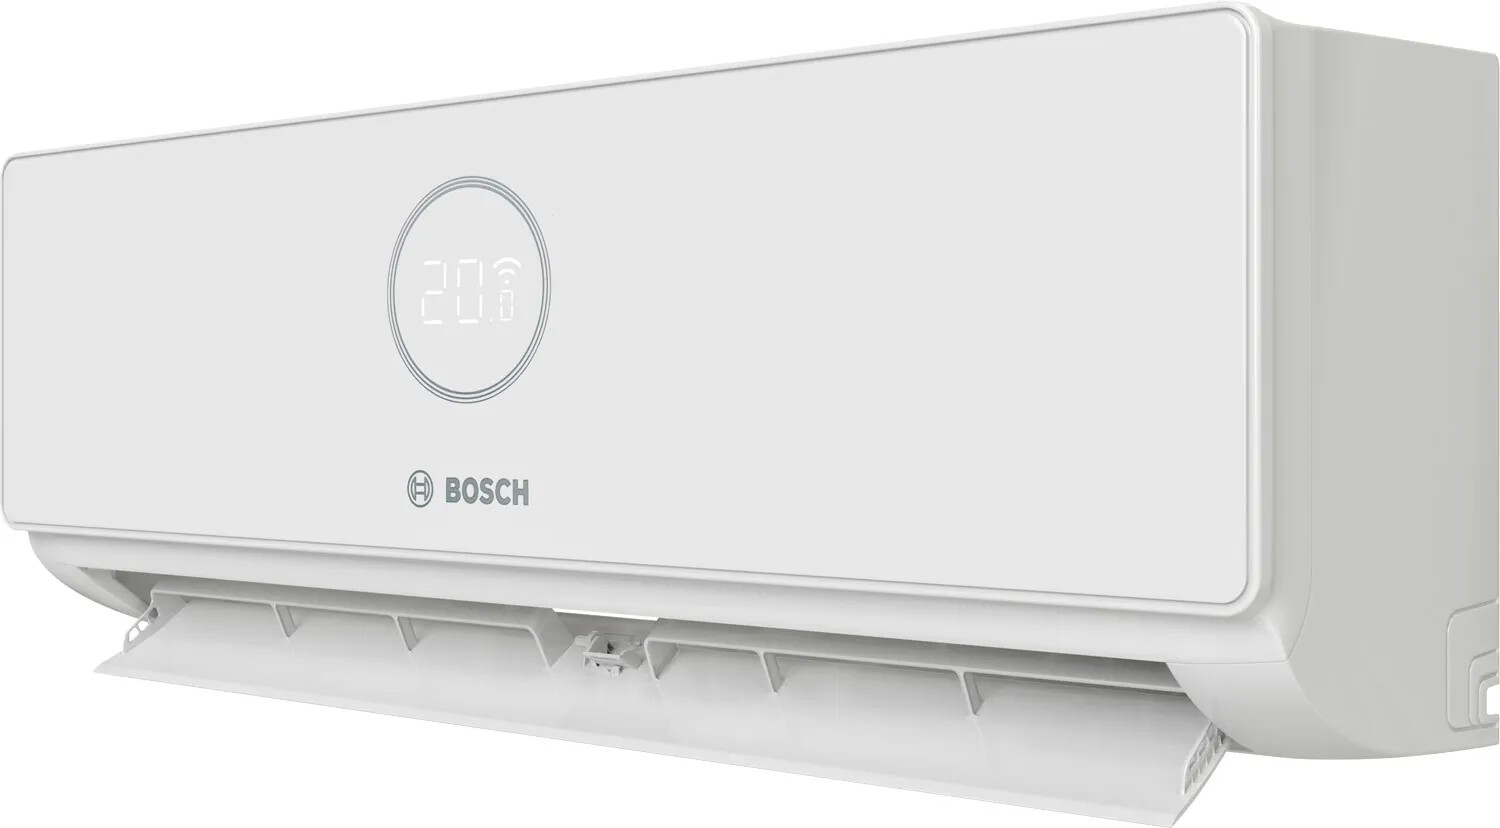 Bosch 5000i W 35 E